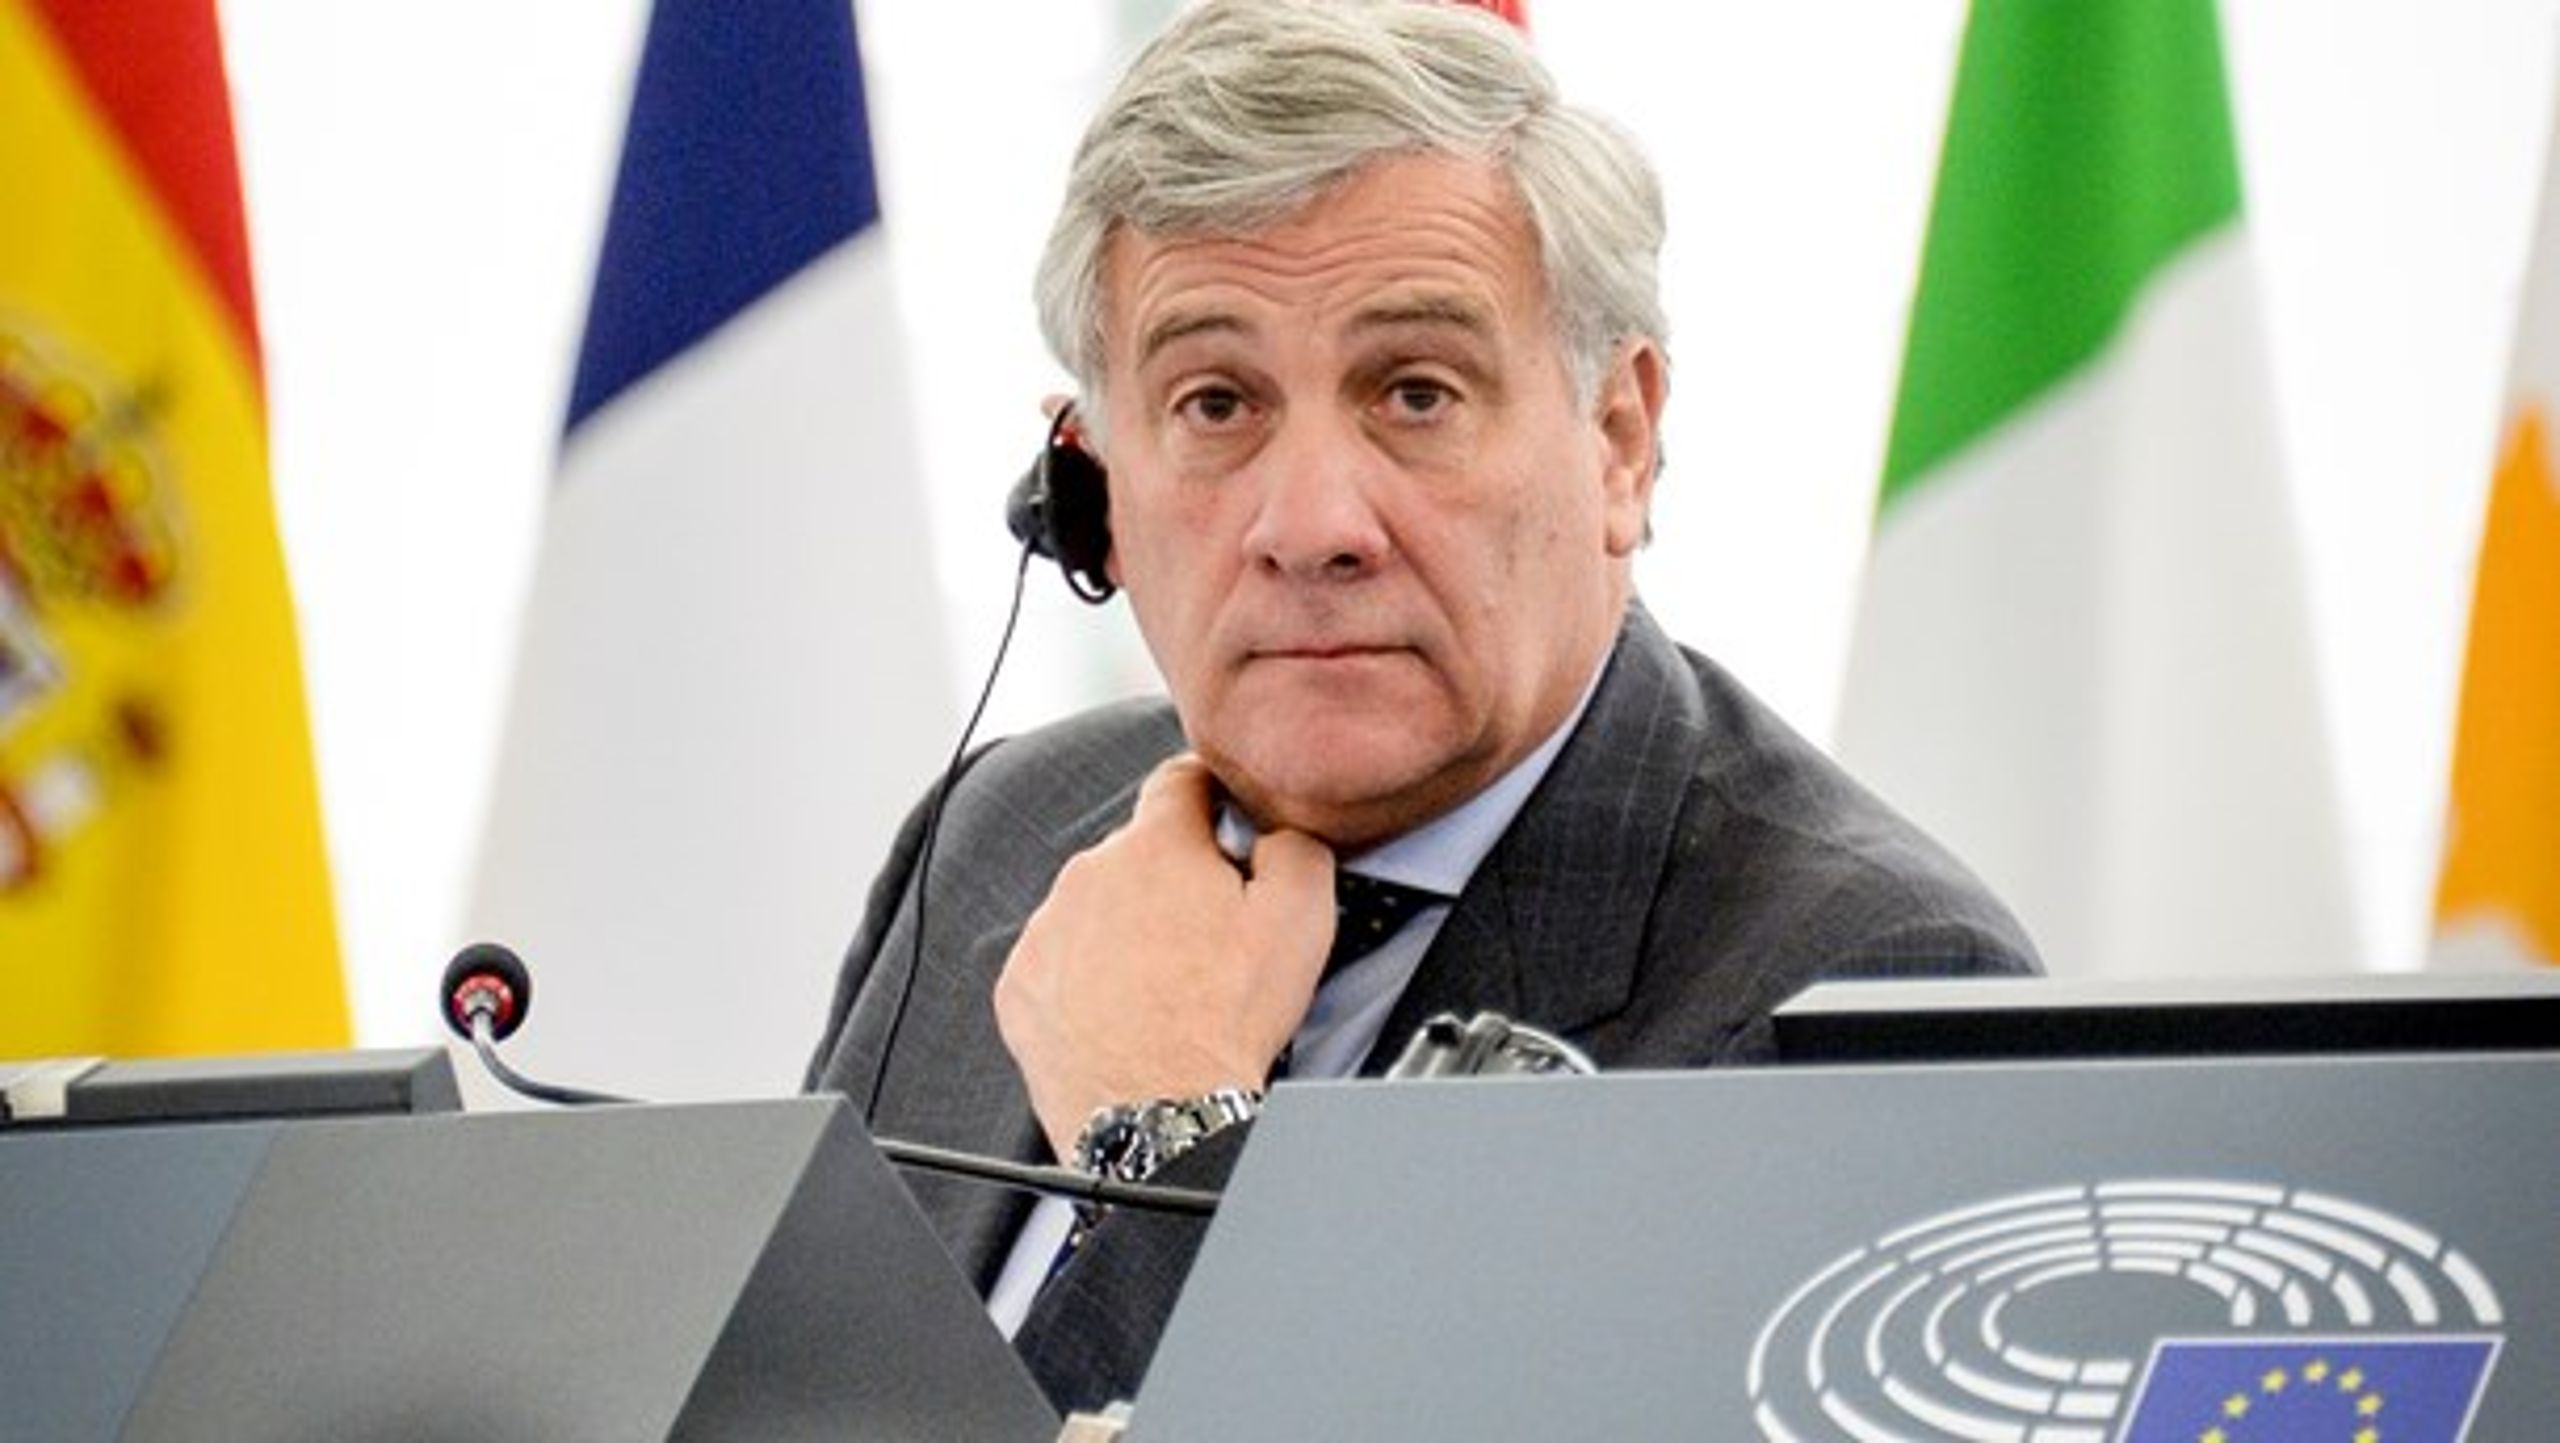 Antonio Tajani ses af nogle som en kontroversiel kandidat&nbsp;til formandsposten, da han&nbsp;tidligere har&nbsp;været talsmand for den skandaleramte italienske præsident Silvio Berlusconi.